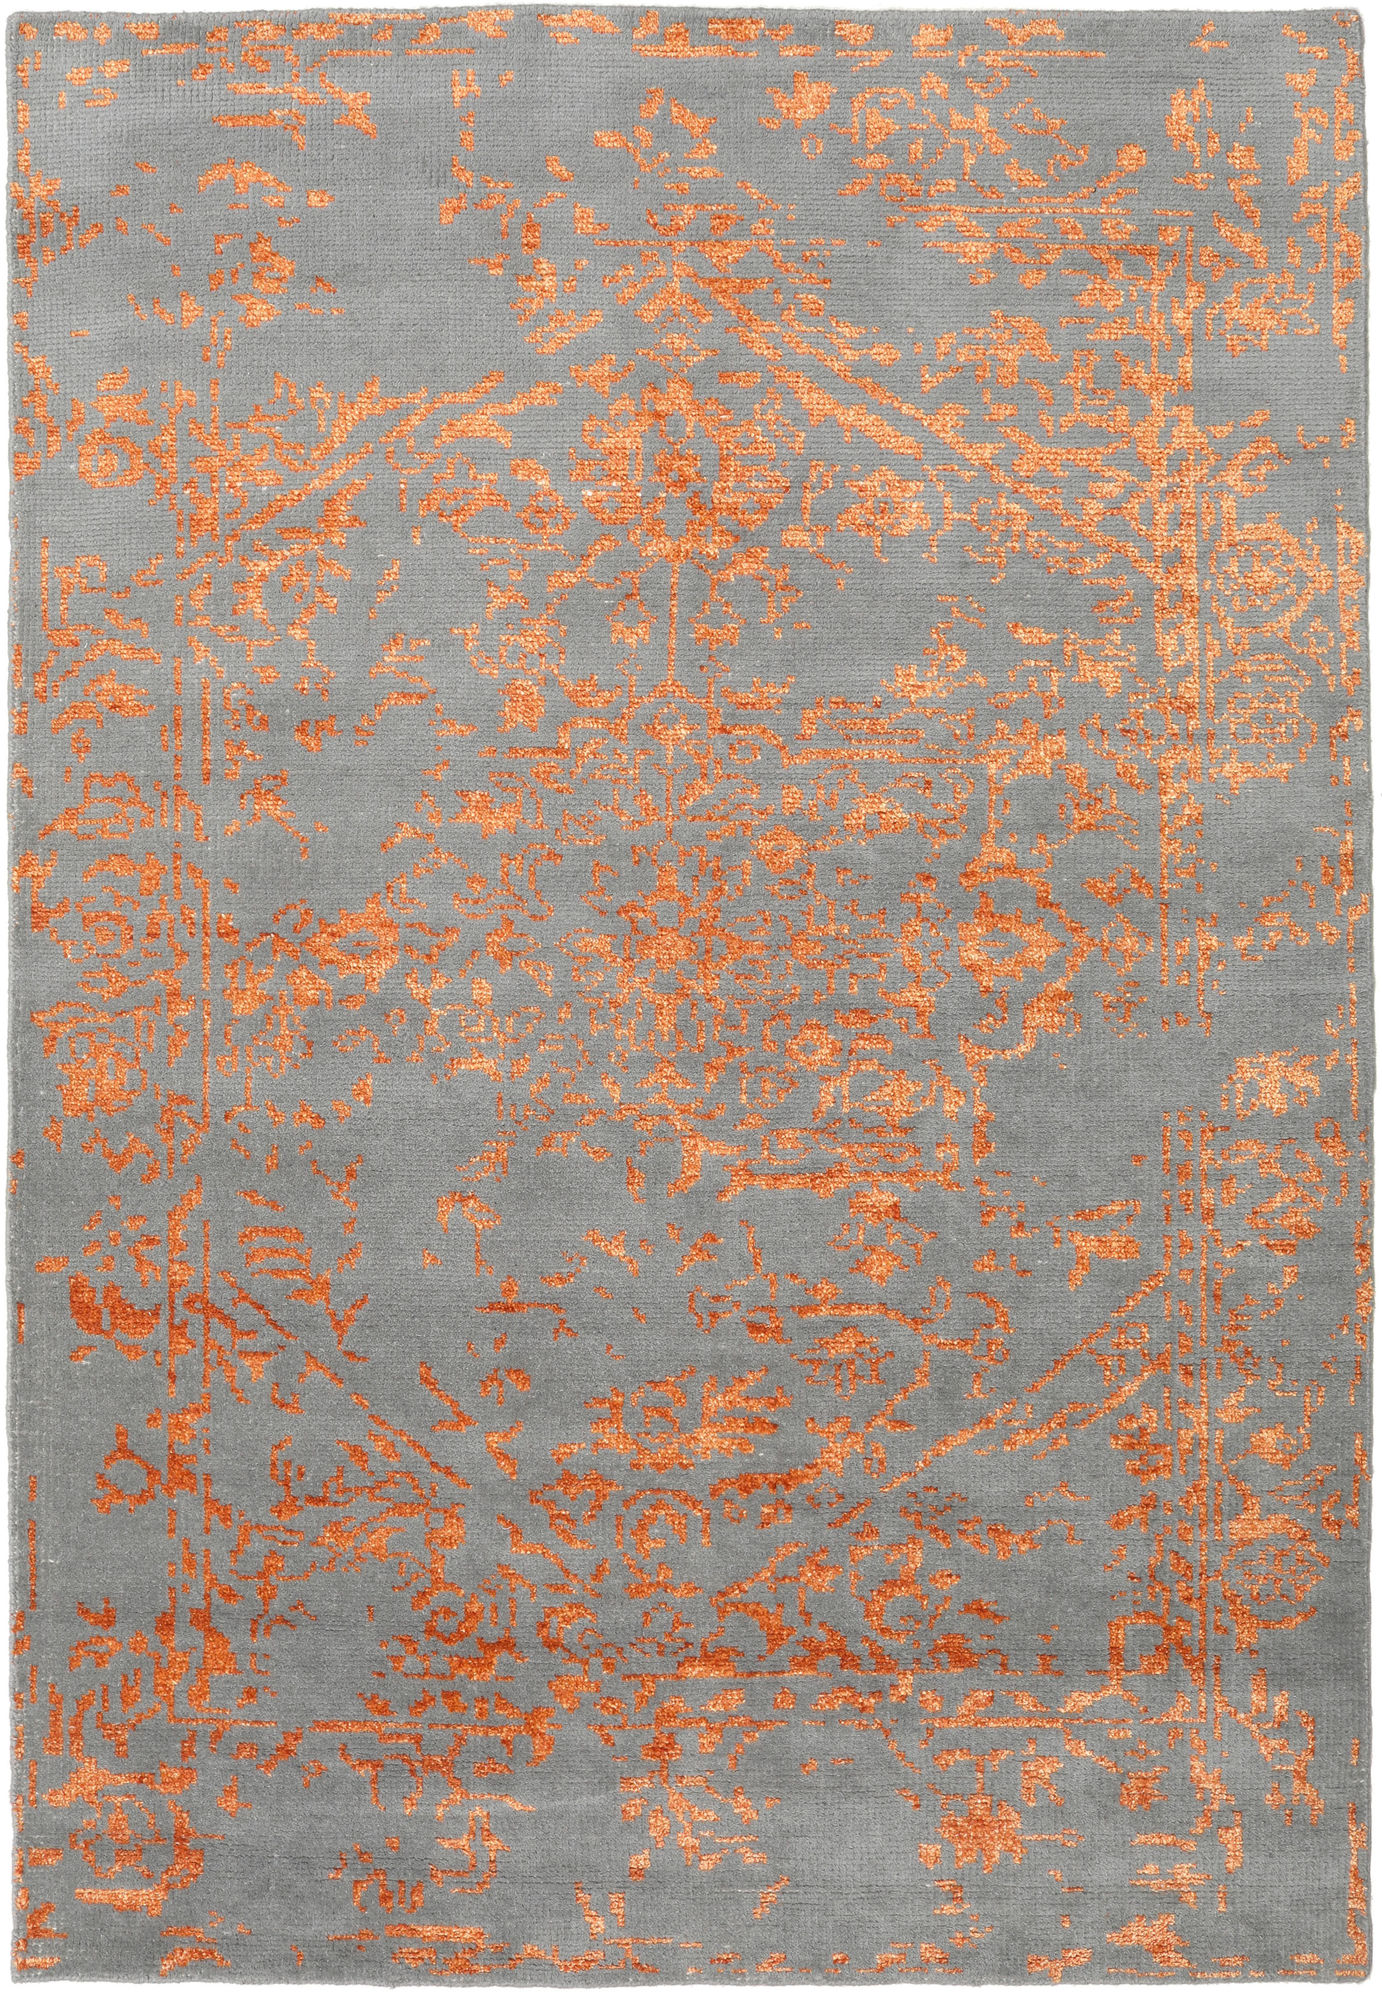  RUGMRZ Teppiche, Dämm- & Schutzmatten 140 x 210 cm Bunter Teppich  orange Teppich Grau Wohnzimmerteppich Orange-graues Geometrisches Muster  Schmutzabweisend, Weich Und Nicht Verformbar